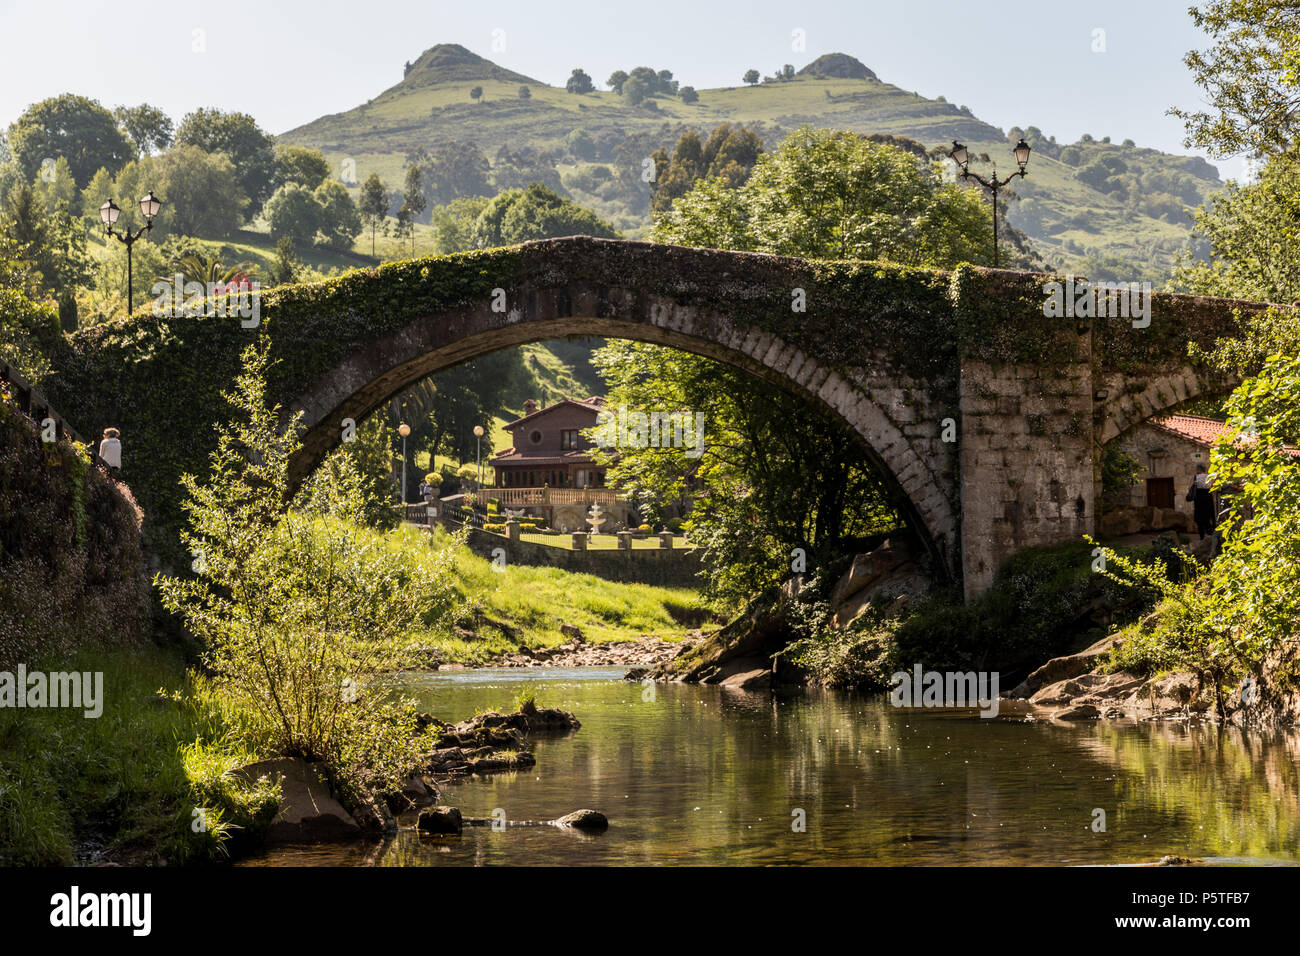 Oviedo, en Cantabrie. Vues de l'hôtel Puente Romano Viejo (Vieux Pont romain) et le Tetas de Lierganes montagnes jumelles. L'une des plus belles villes que j Banque D'Images